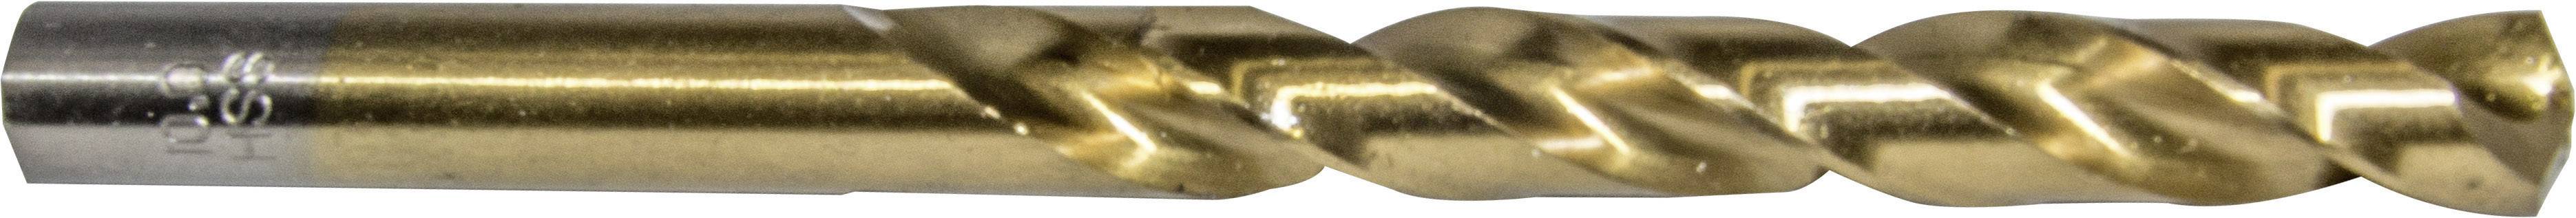 HELLER 29270 2 Metall-Spiralbohrer 1 Stück 8 mm Gesamtlänge 117 mm 1 St.